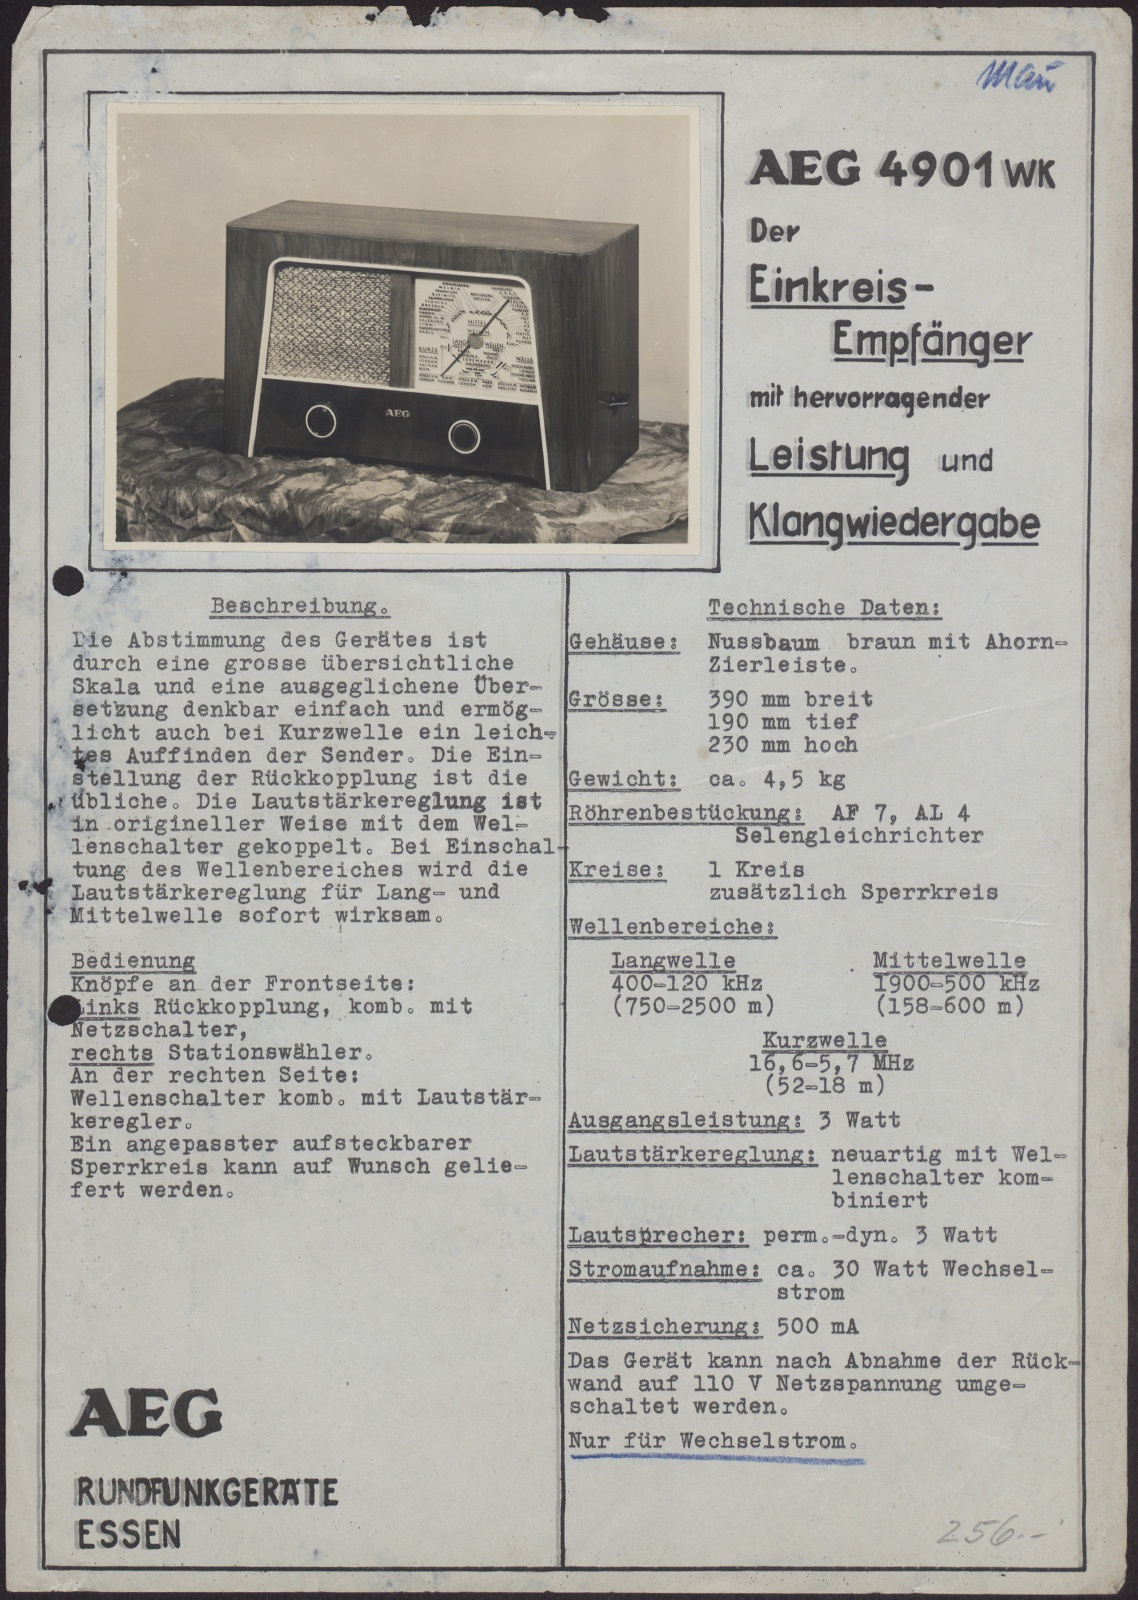 Bedienungsanleitung: AEG 4901 WK (Stiftung Deutsches Technikmuseum Berlin CC0)